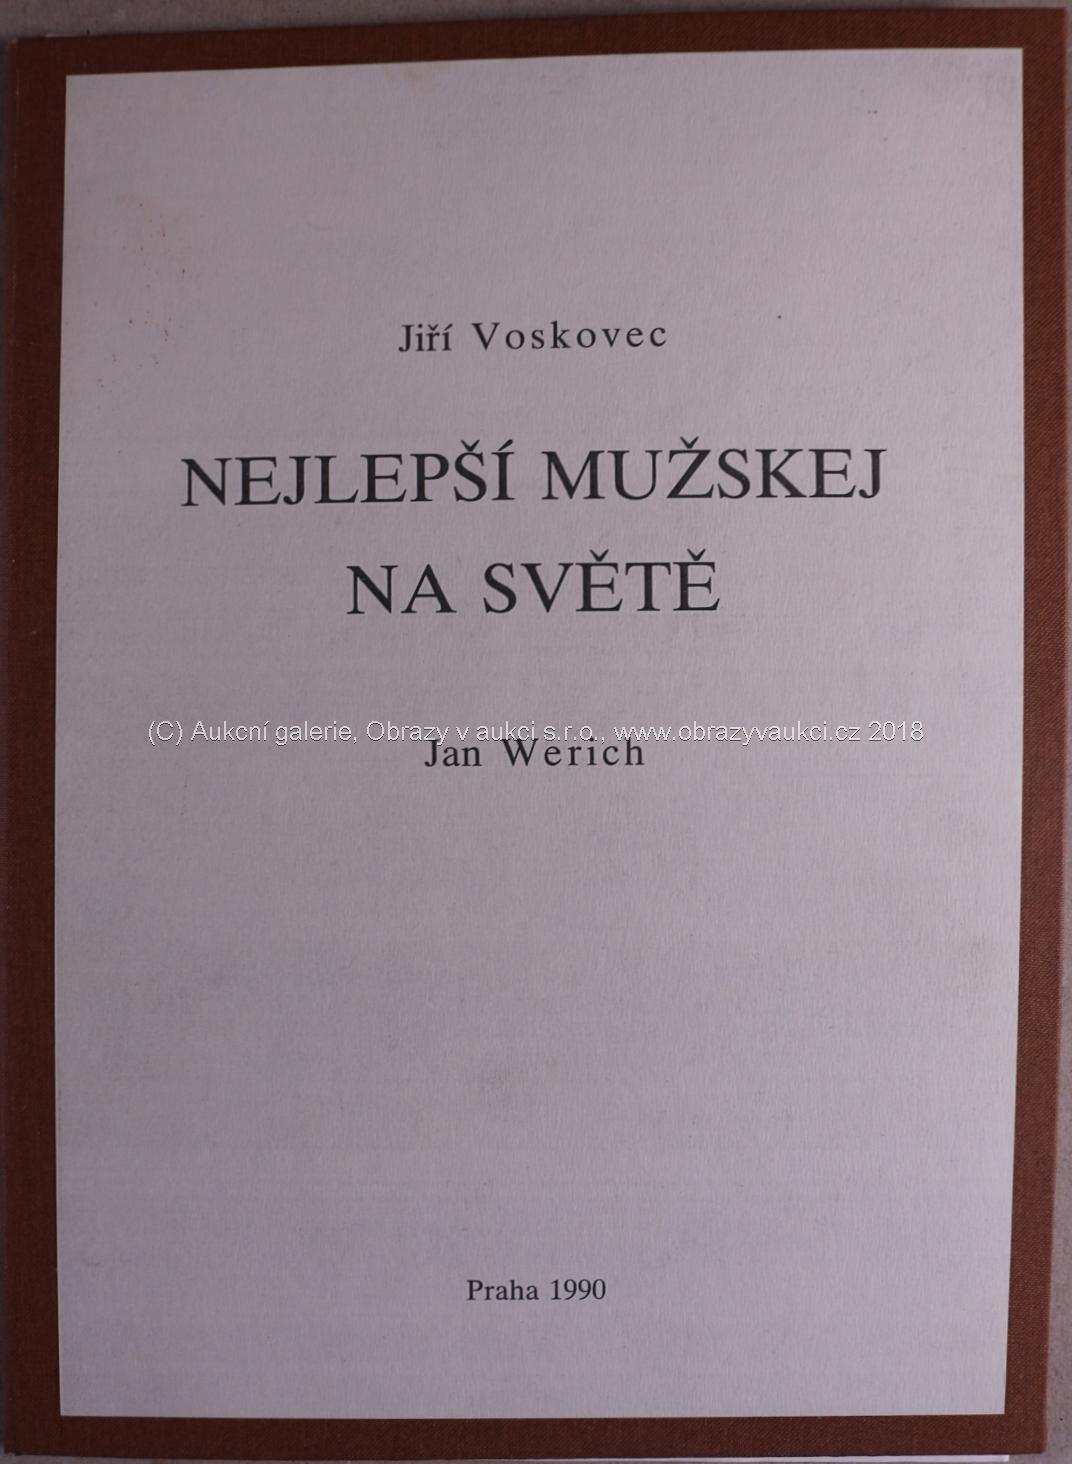 Jiří Voskovec, Jan Werich - Nejlepší mužskej na světě